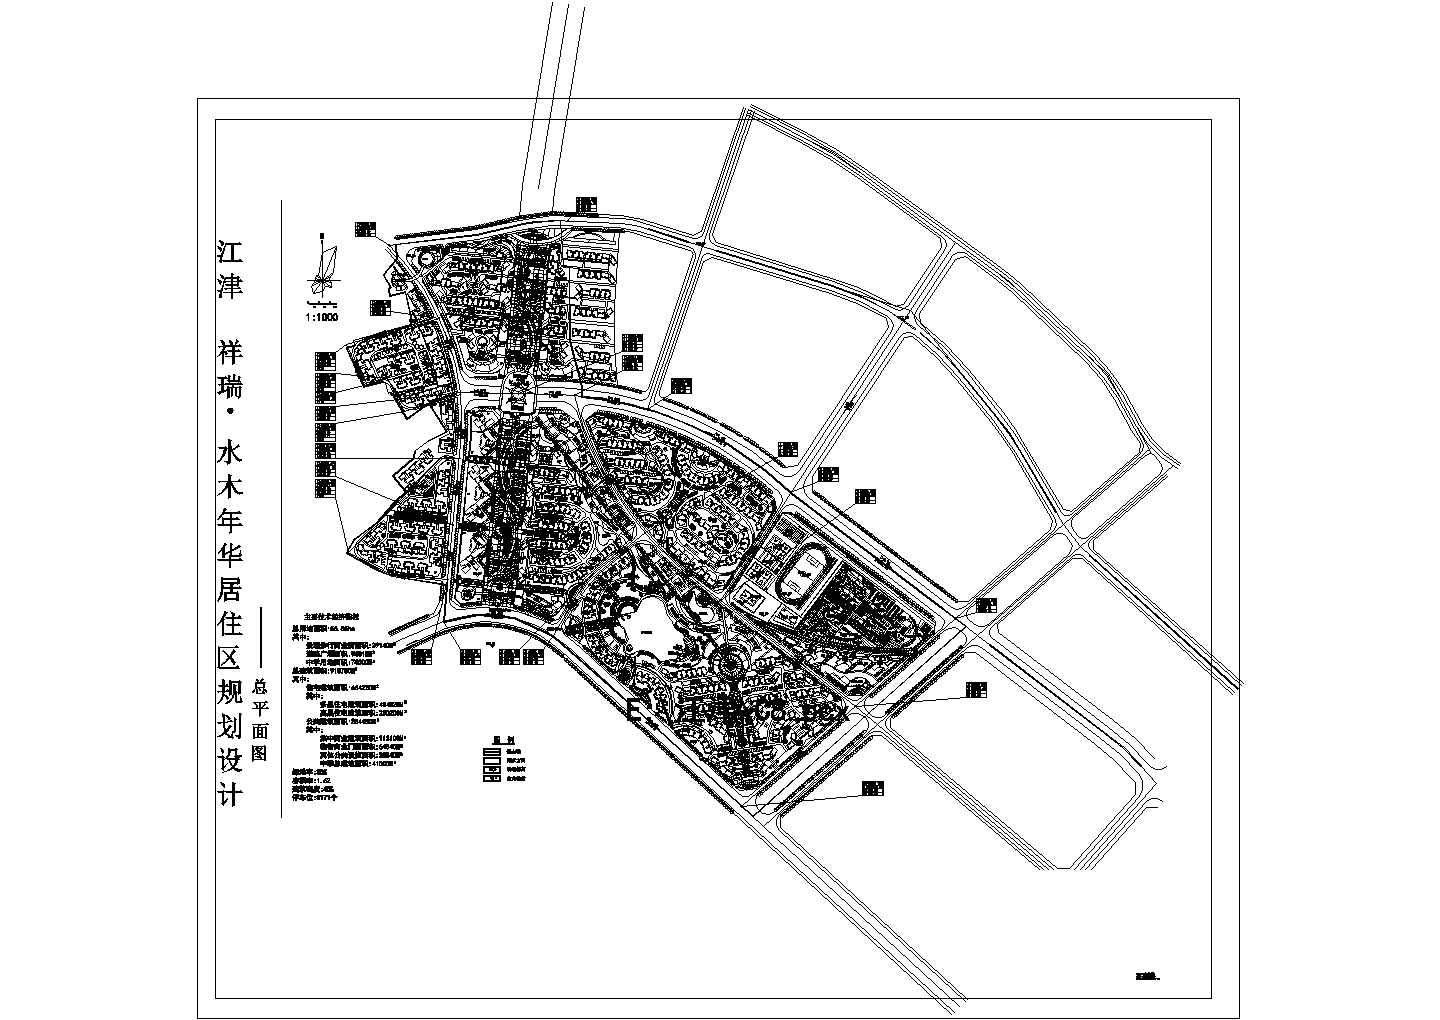 总用地56.55ha大型居住区规划设计总平面图